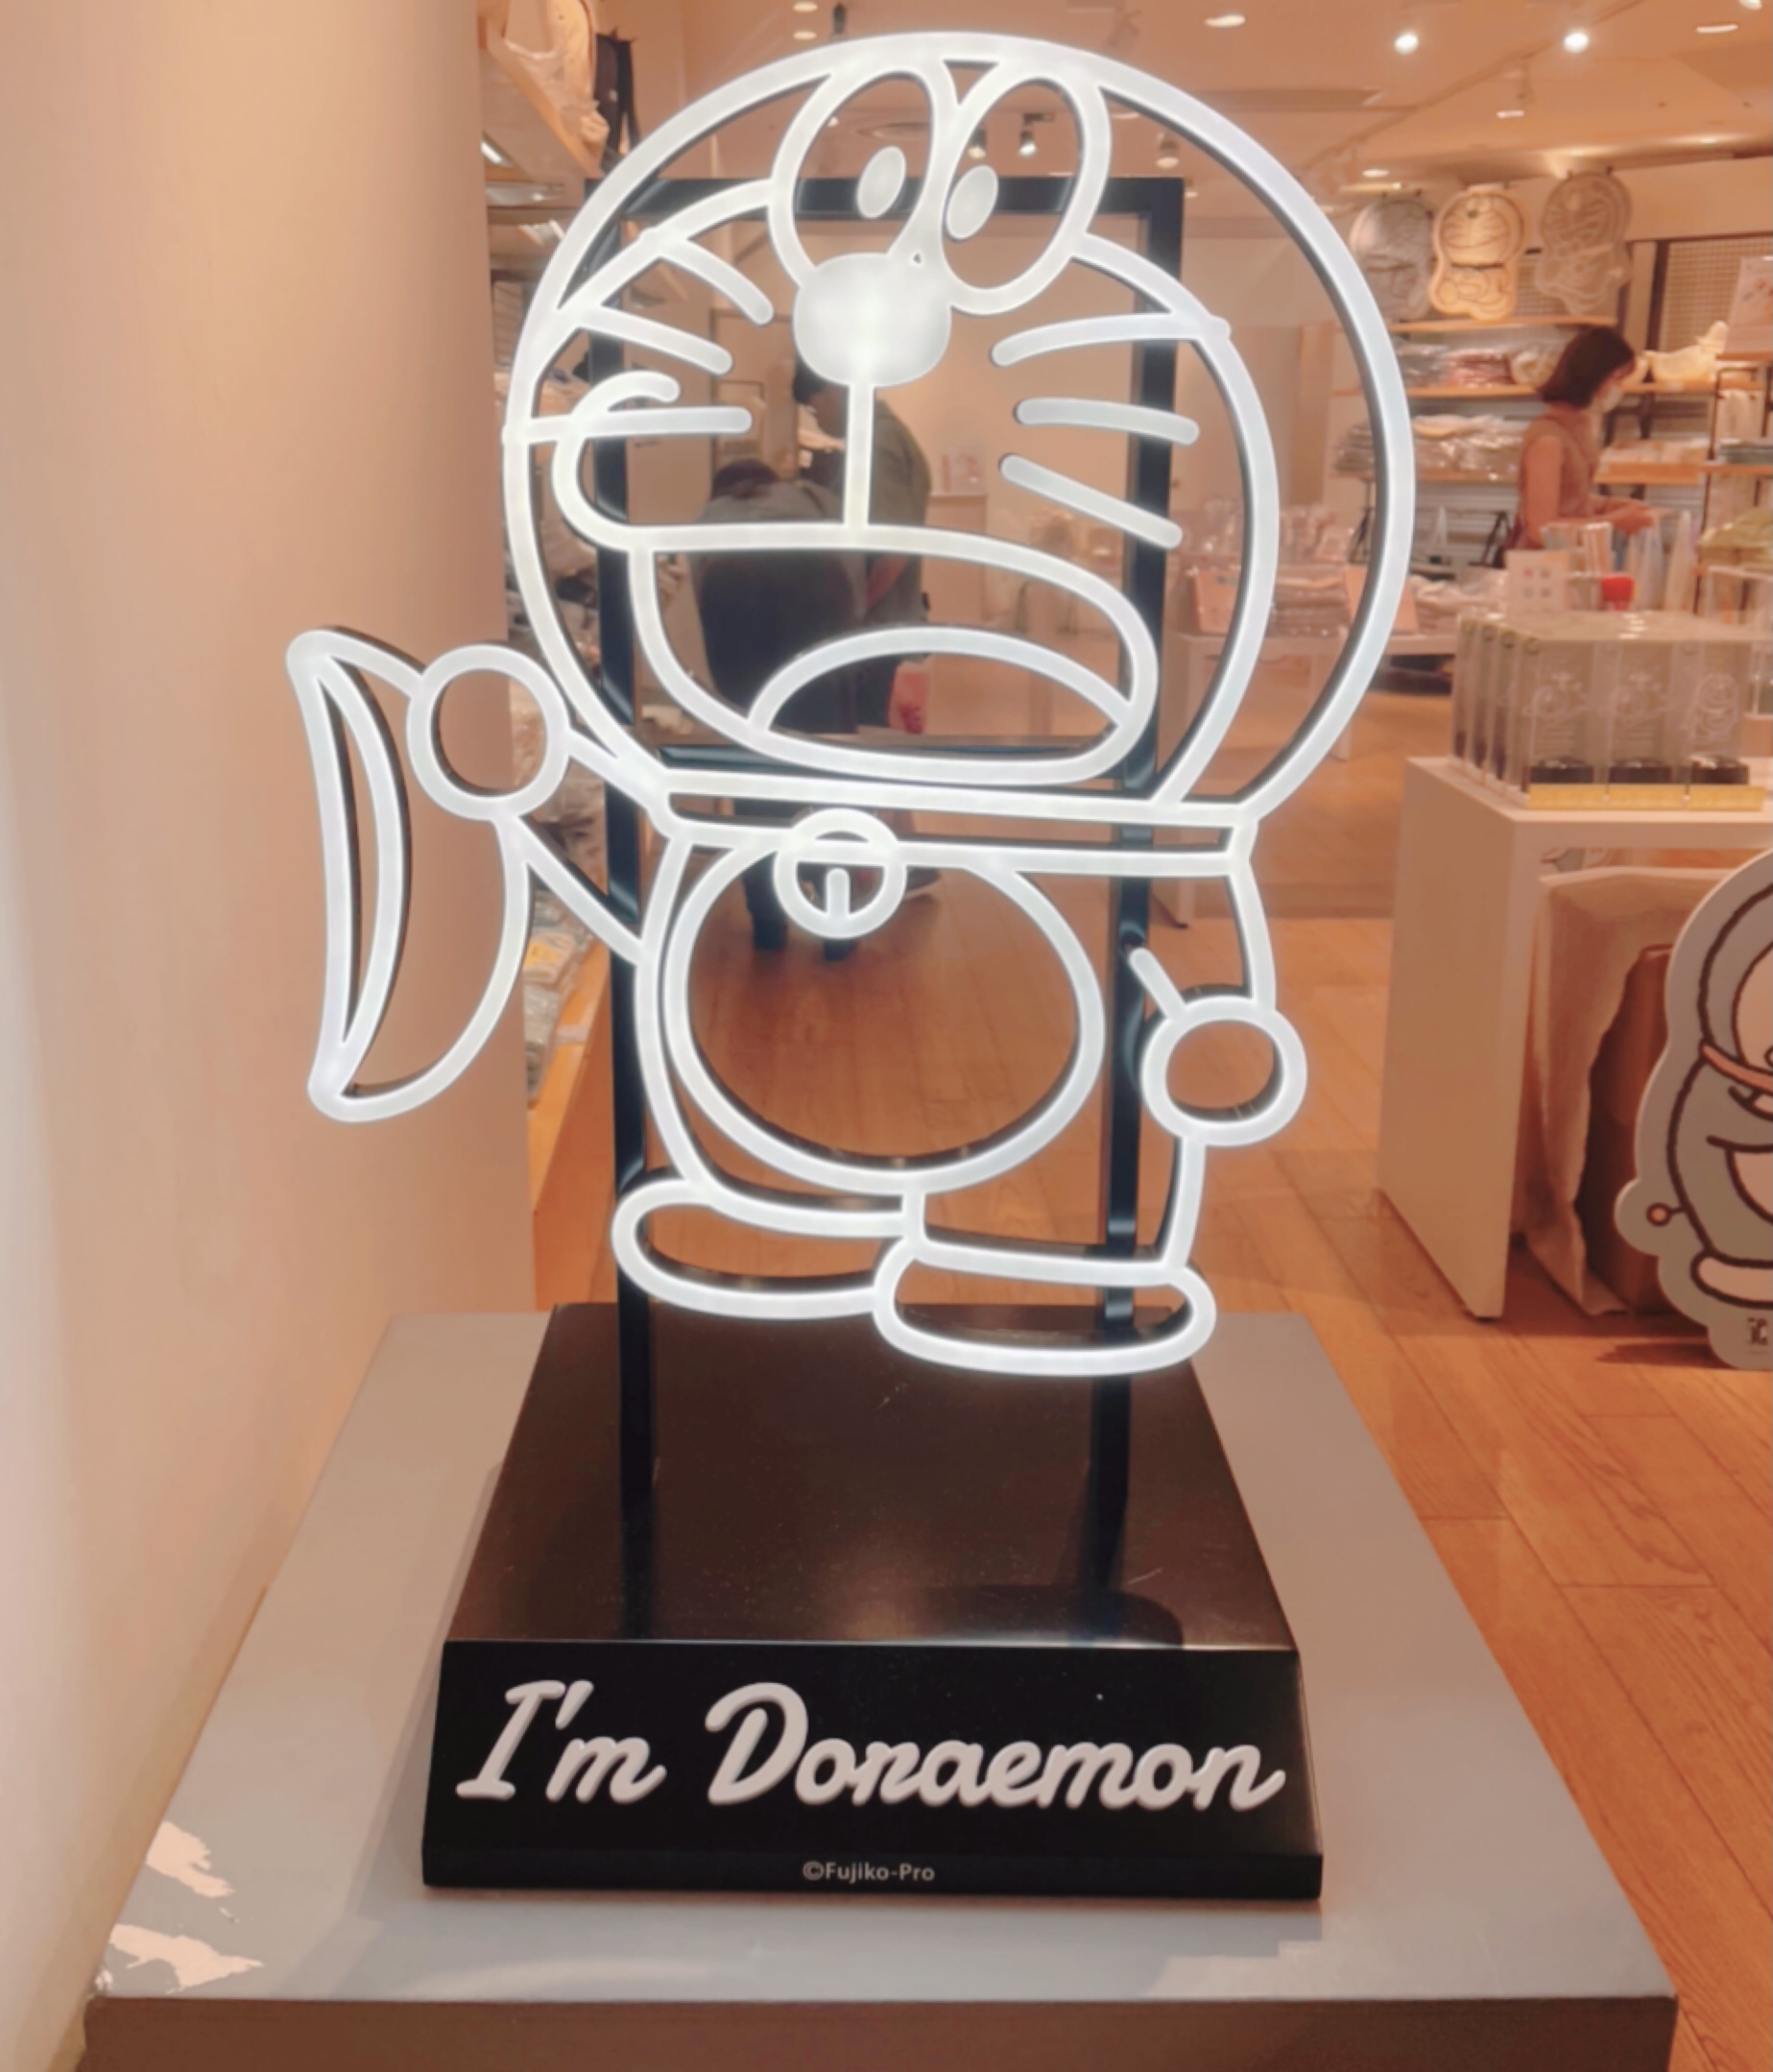 福岡パルコ I M Doraemon Pop Up Store By Flowering に行ってきた For